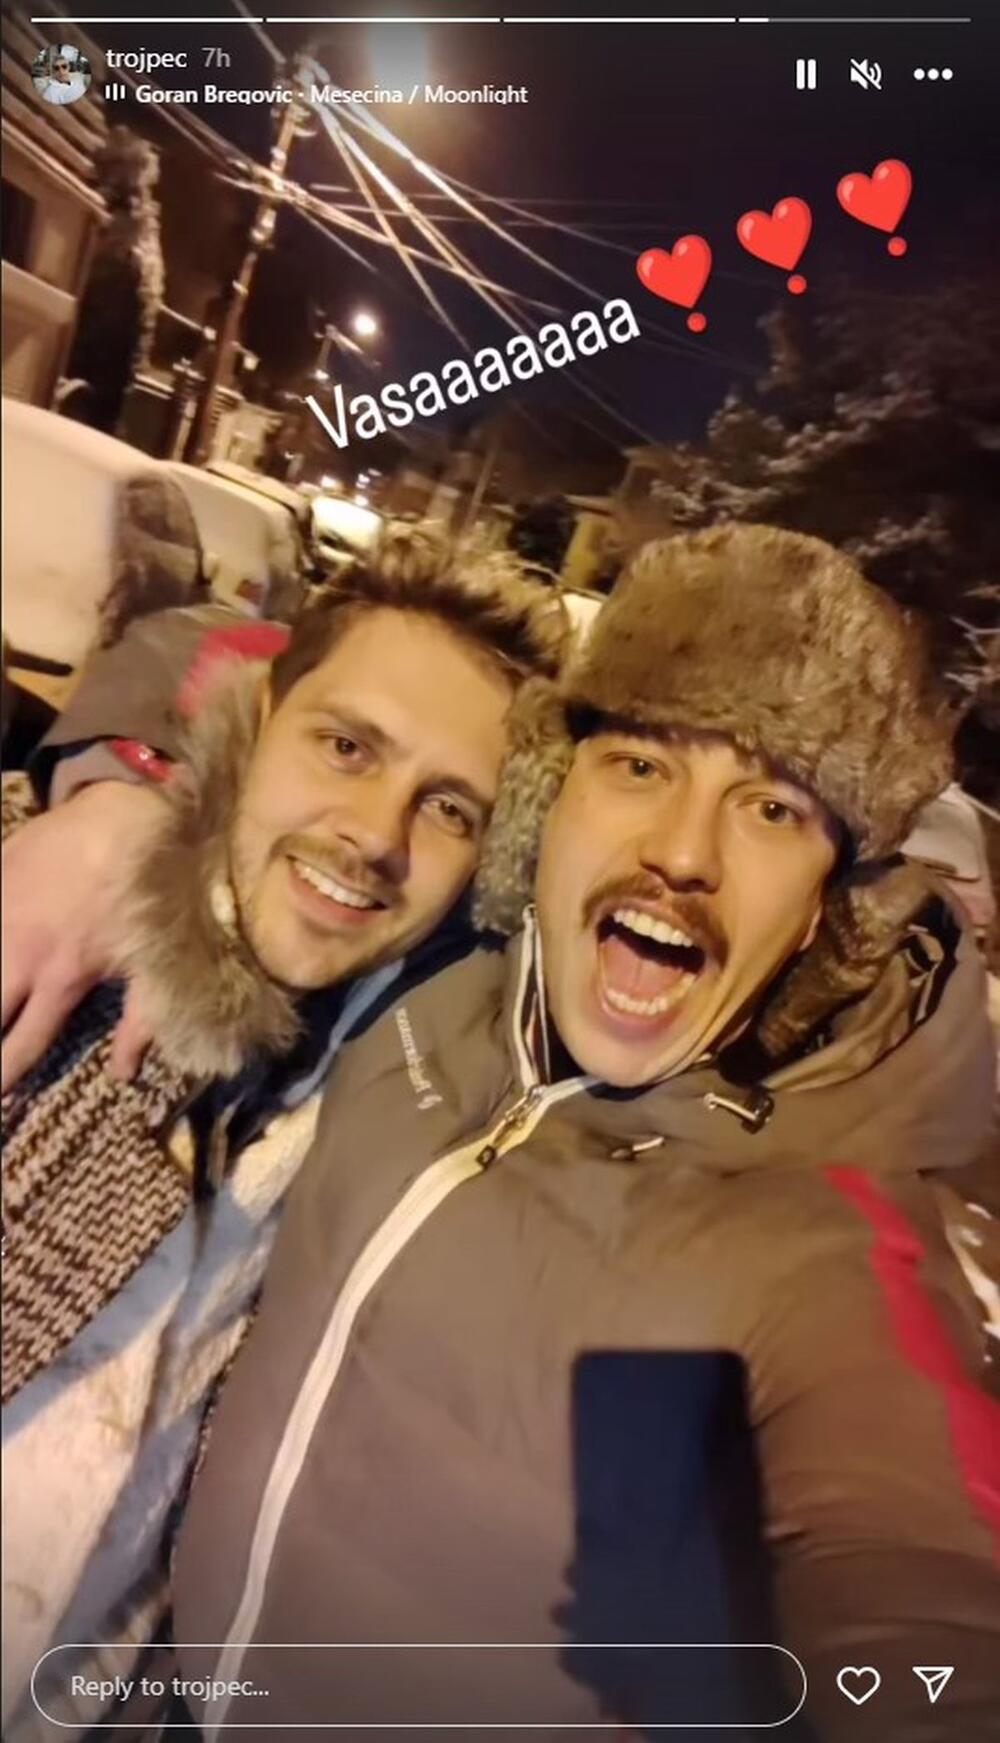 Miloš Petrović Trojpec otkrio je ime sina Miloša Bikovića na Instagramu